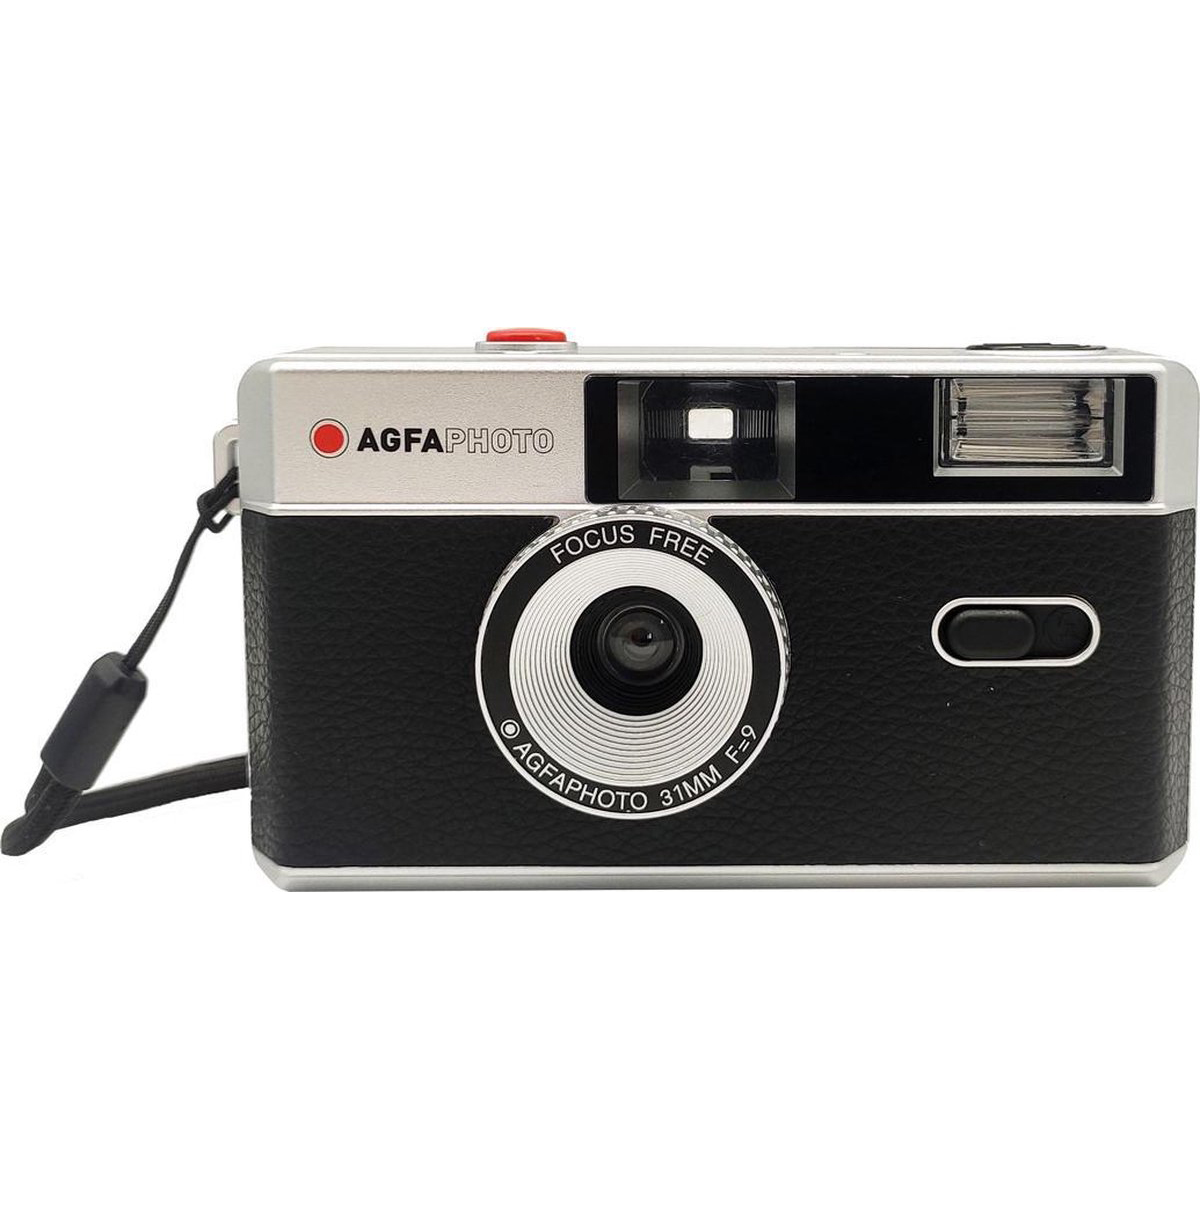 Overgang hoek op gang brengen Agfa Photo Camera 35mm Black Kit - Welkom bij Foto Romp in Utrecht